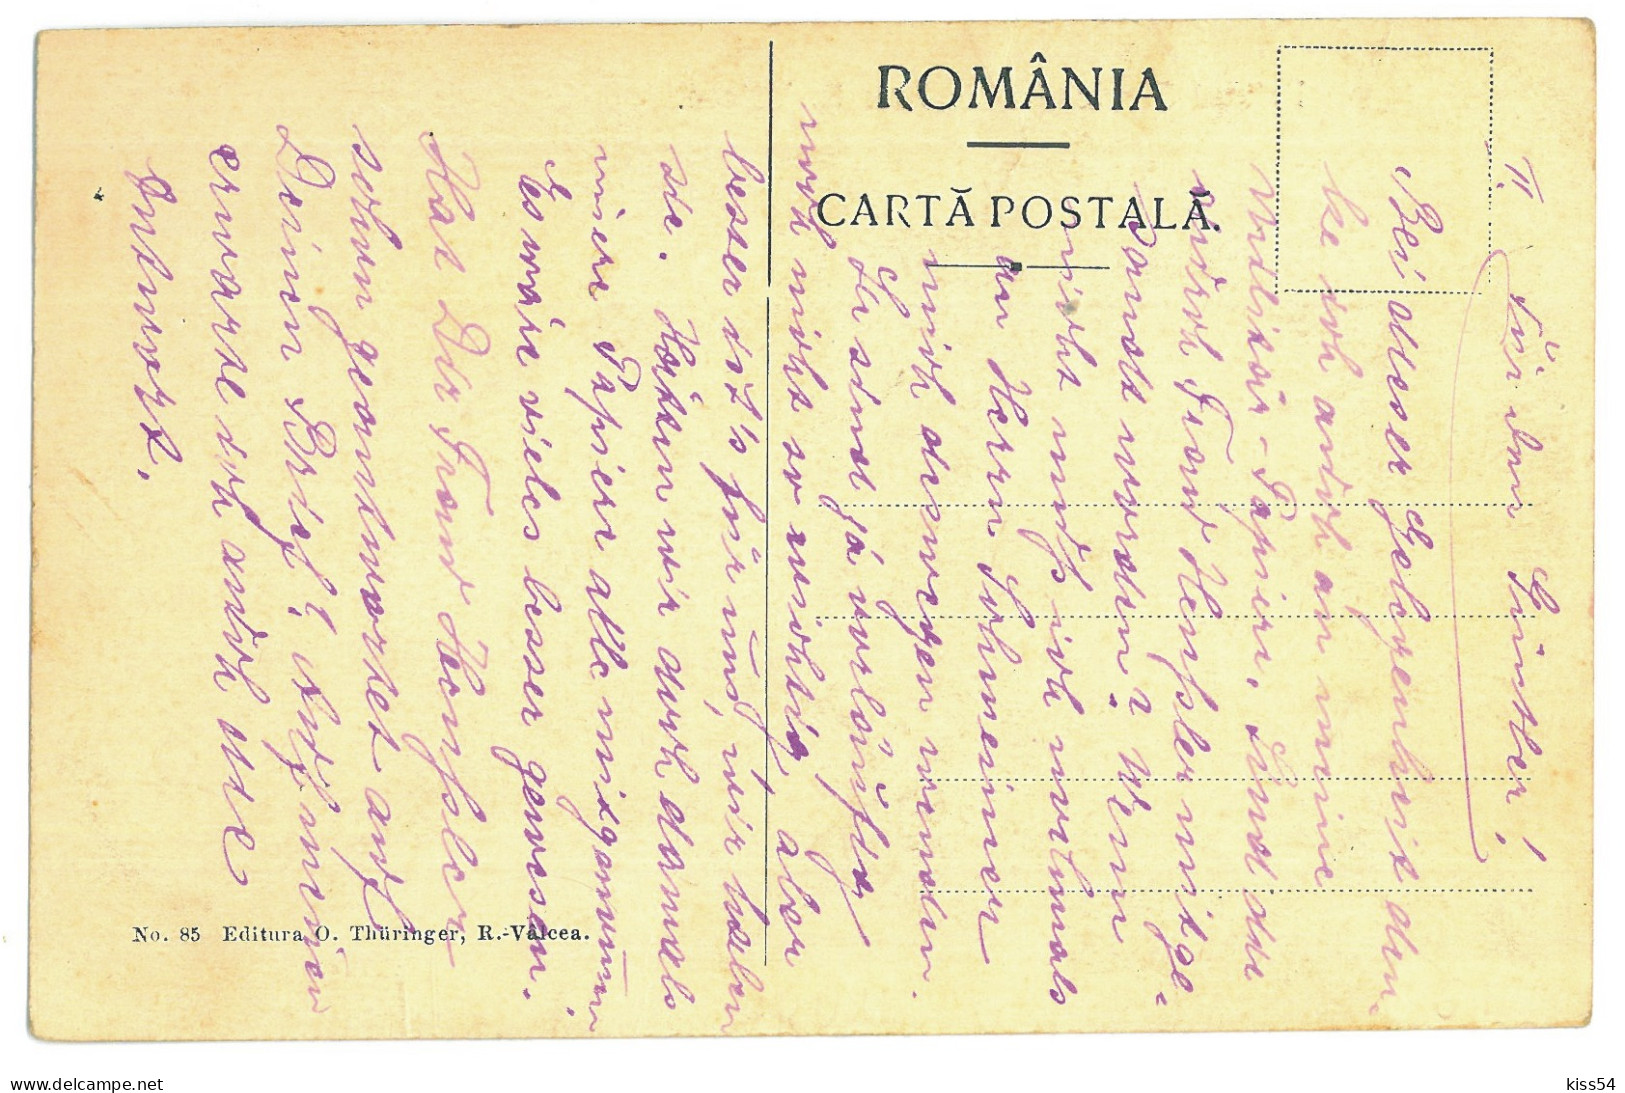 RO 45 - 22686 Rm. VALCEA, Serviciul Tehnic, Romania - Old Postcard - Used - Romania